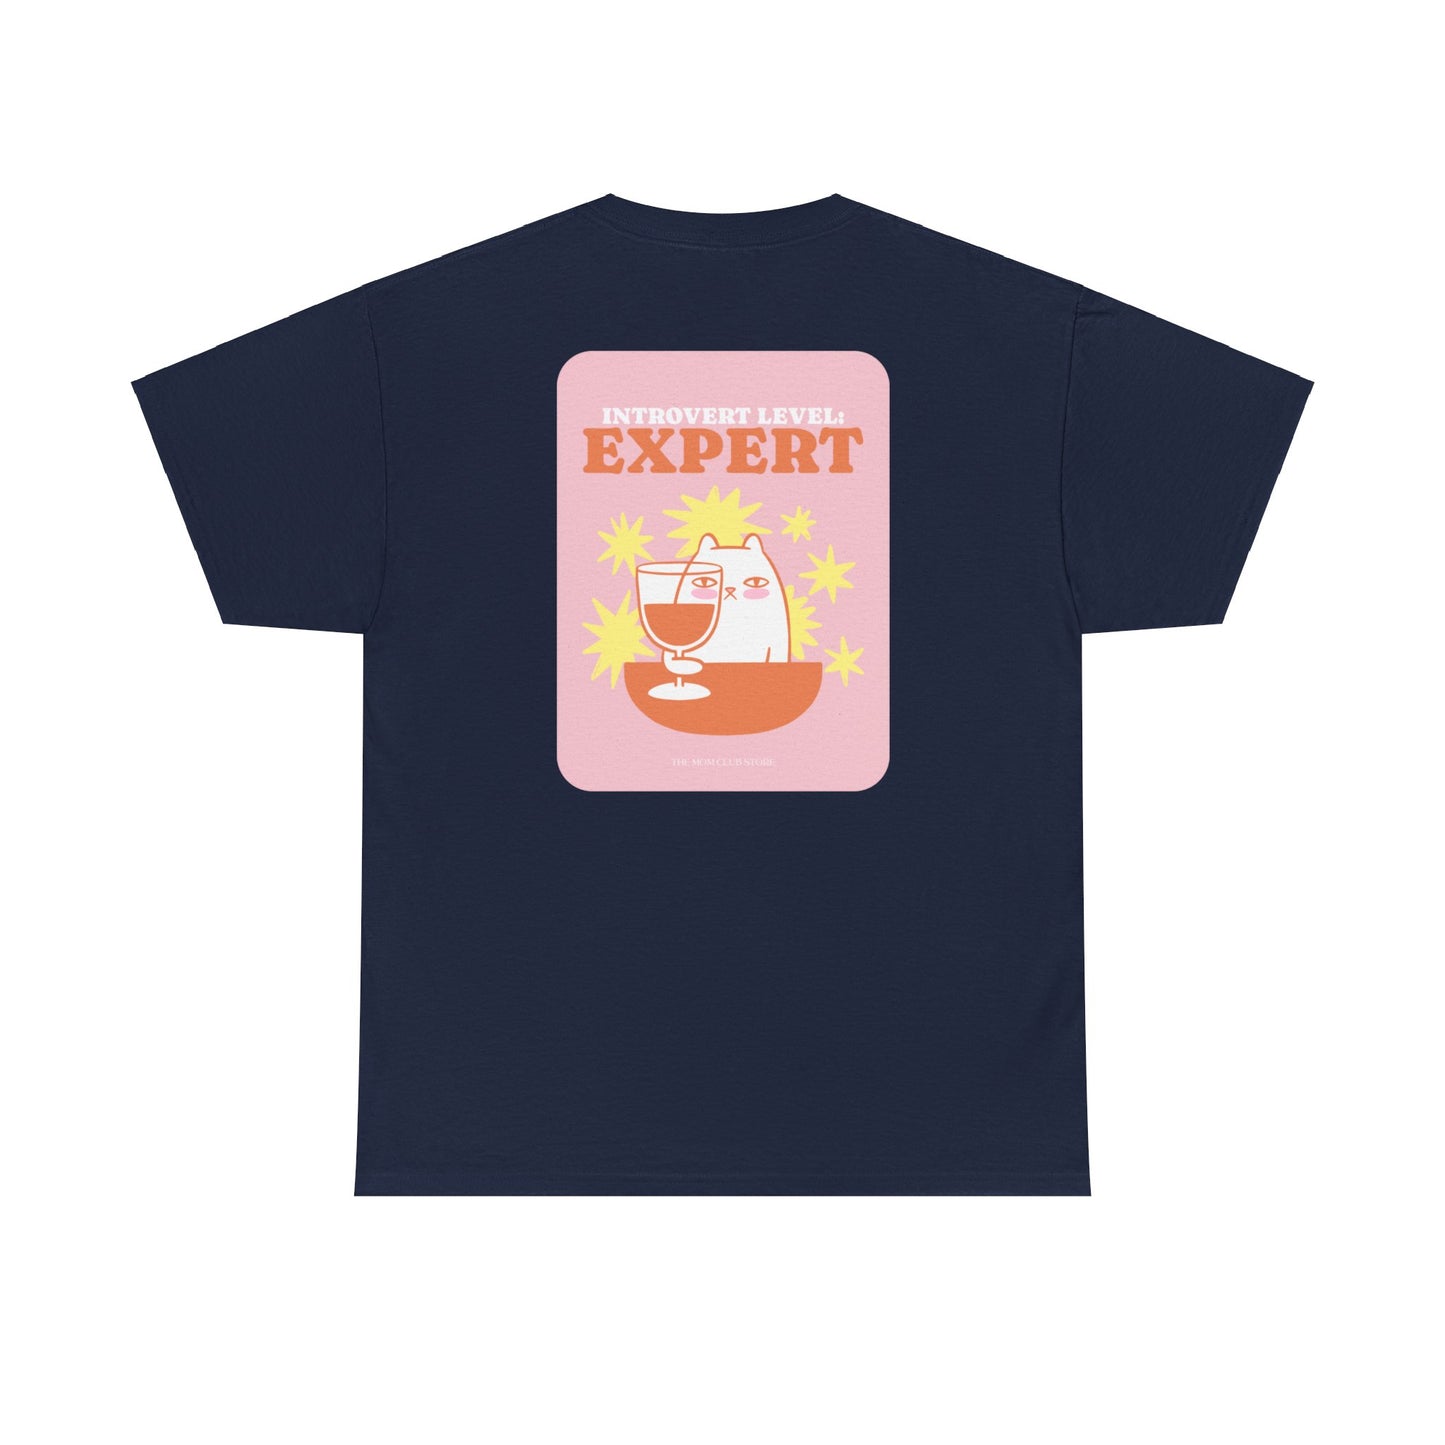 T-shirt à manches courtes à imprimé unisexe INTROVERT LEVEL EXPERT pour adulte